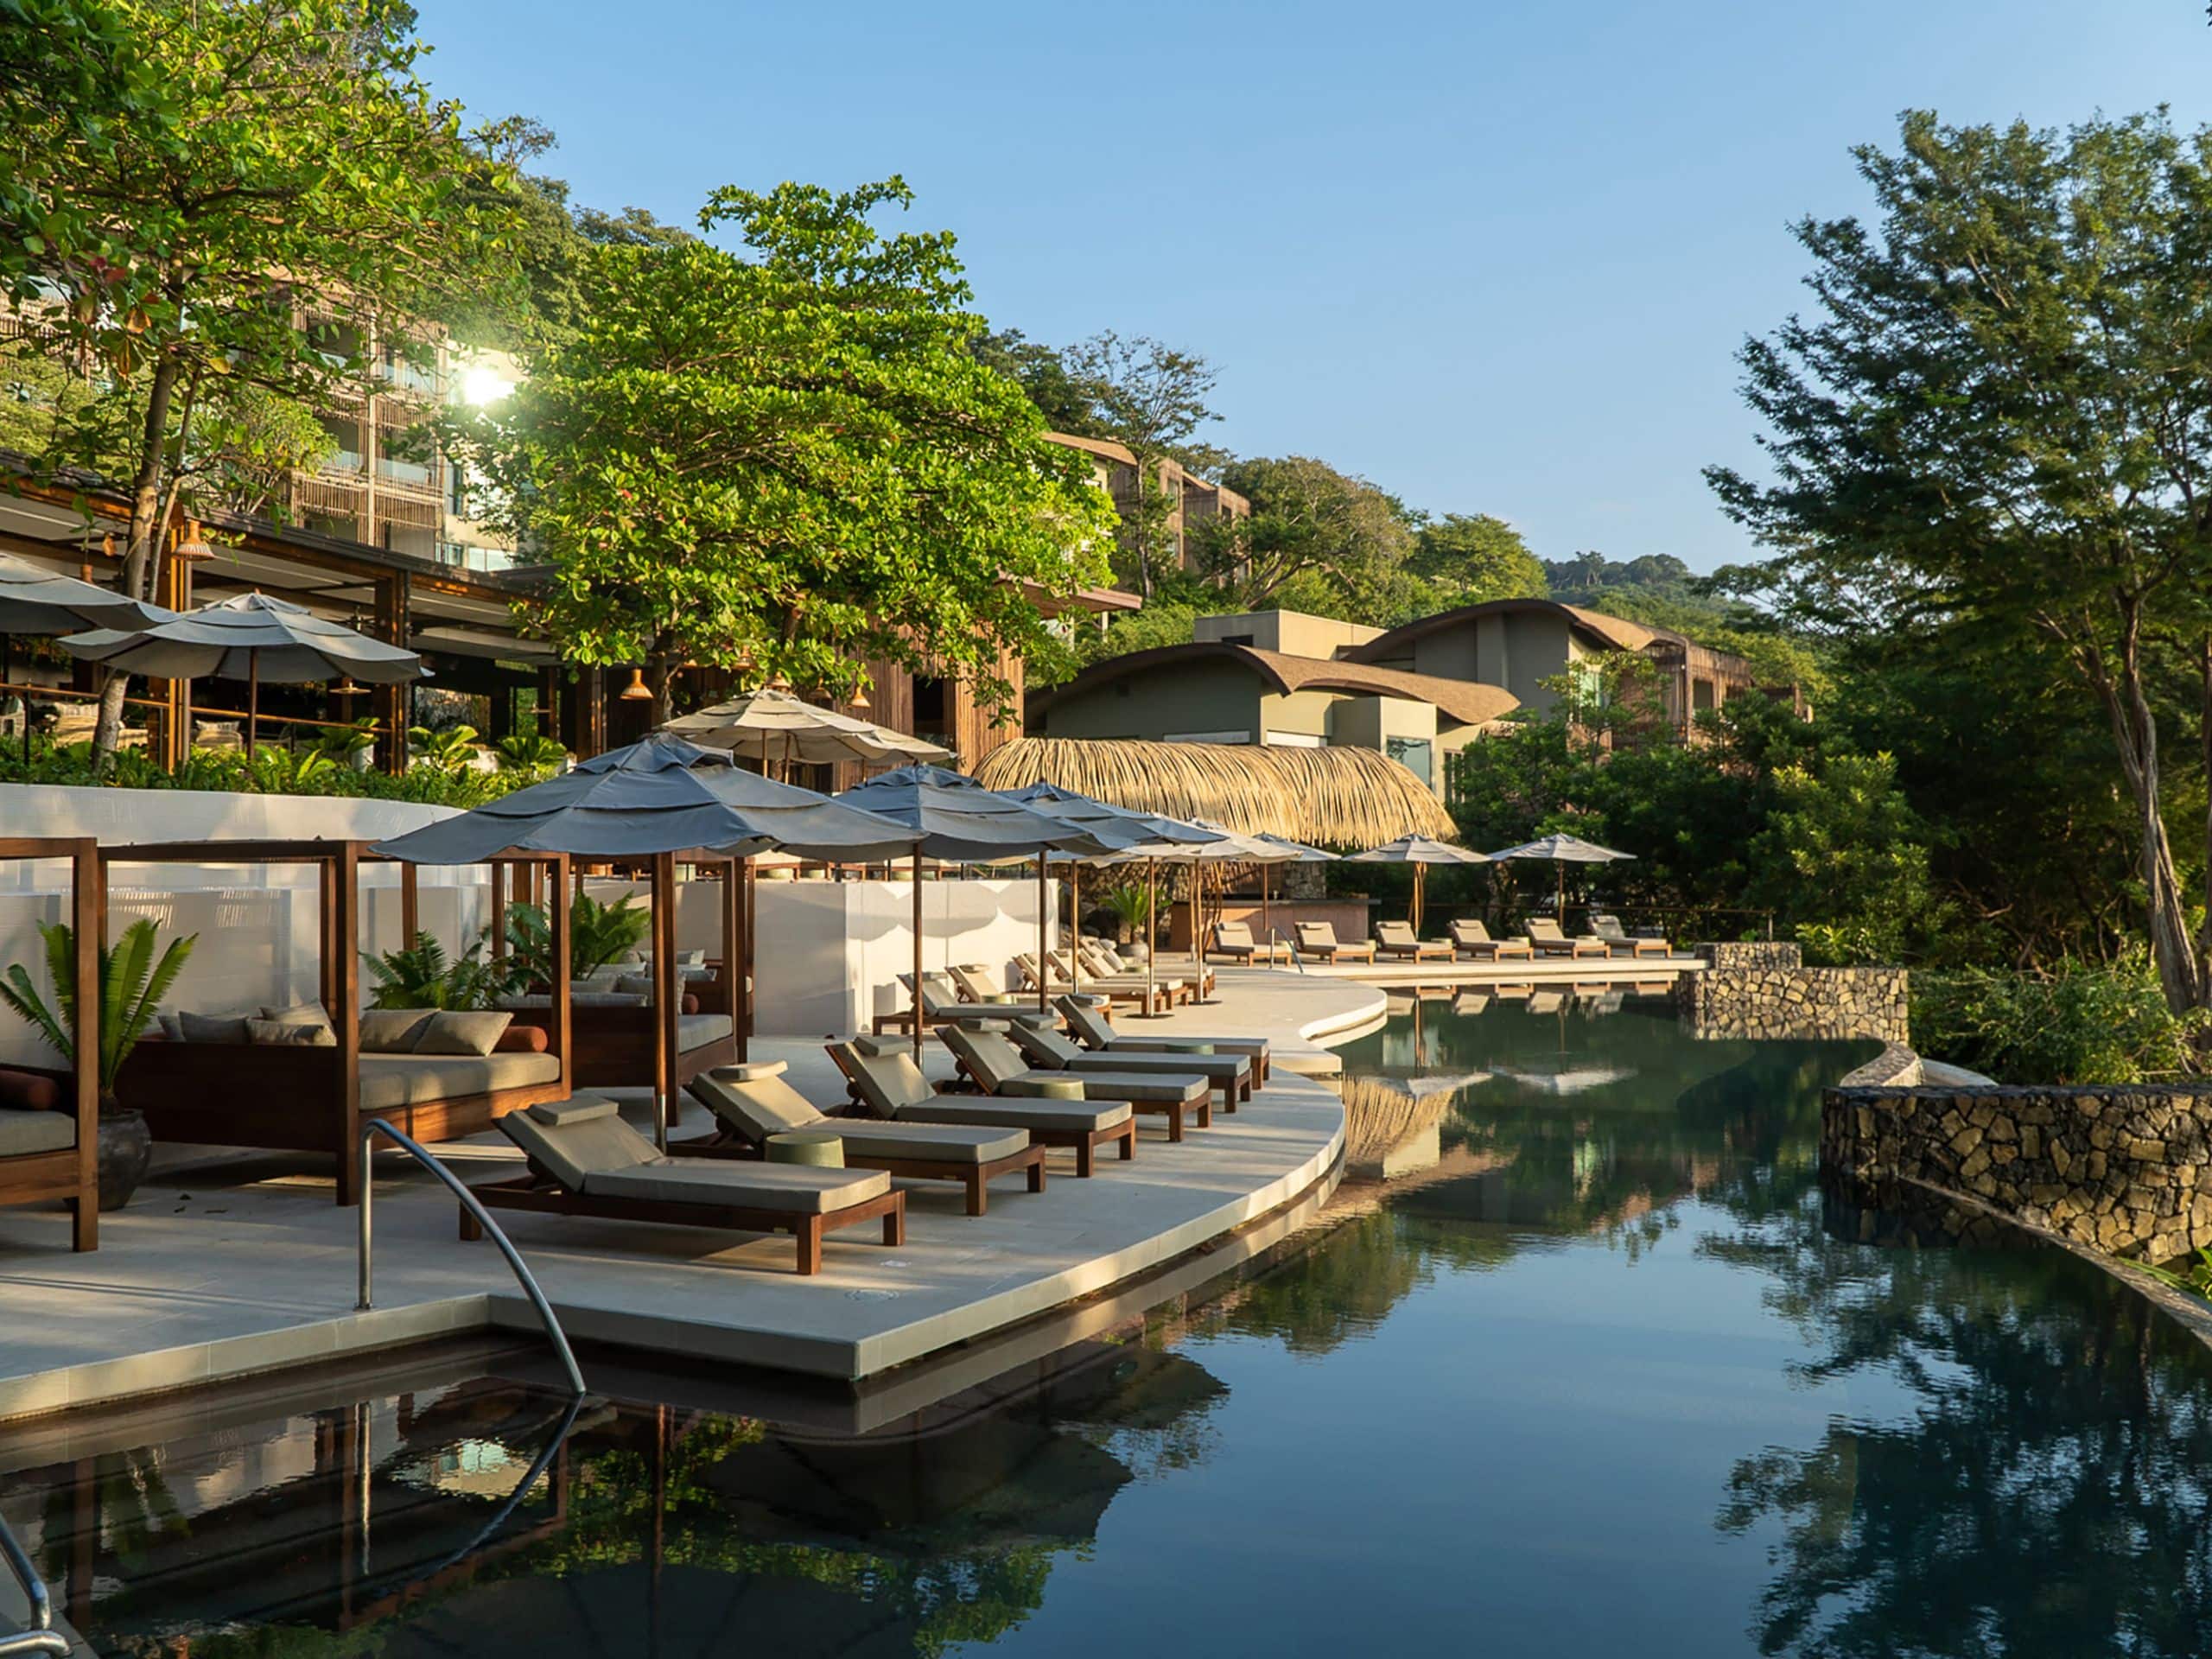 Andaz Costa Rica Resort at Peninsula Papagayo Ostra Pool Deck Chairs